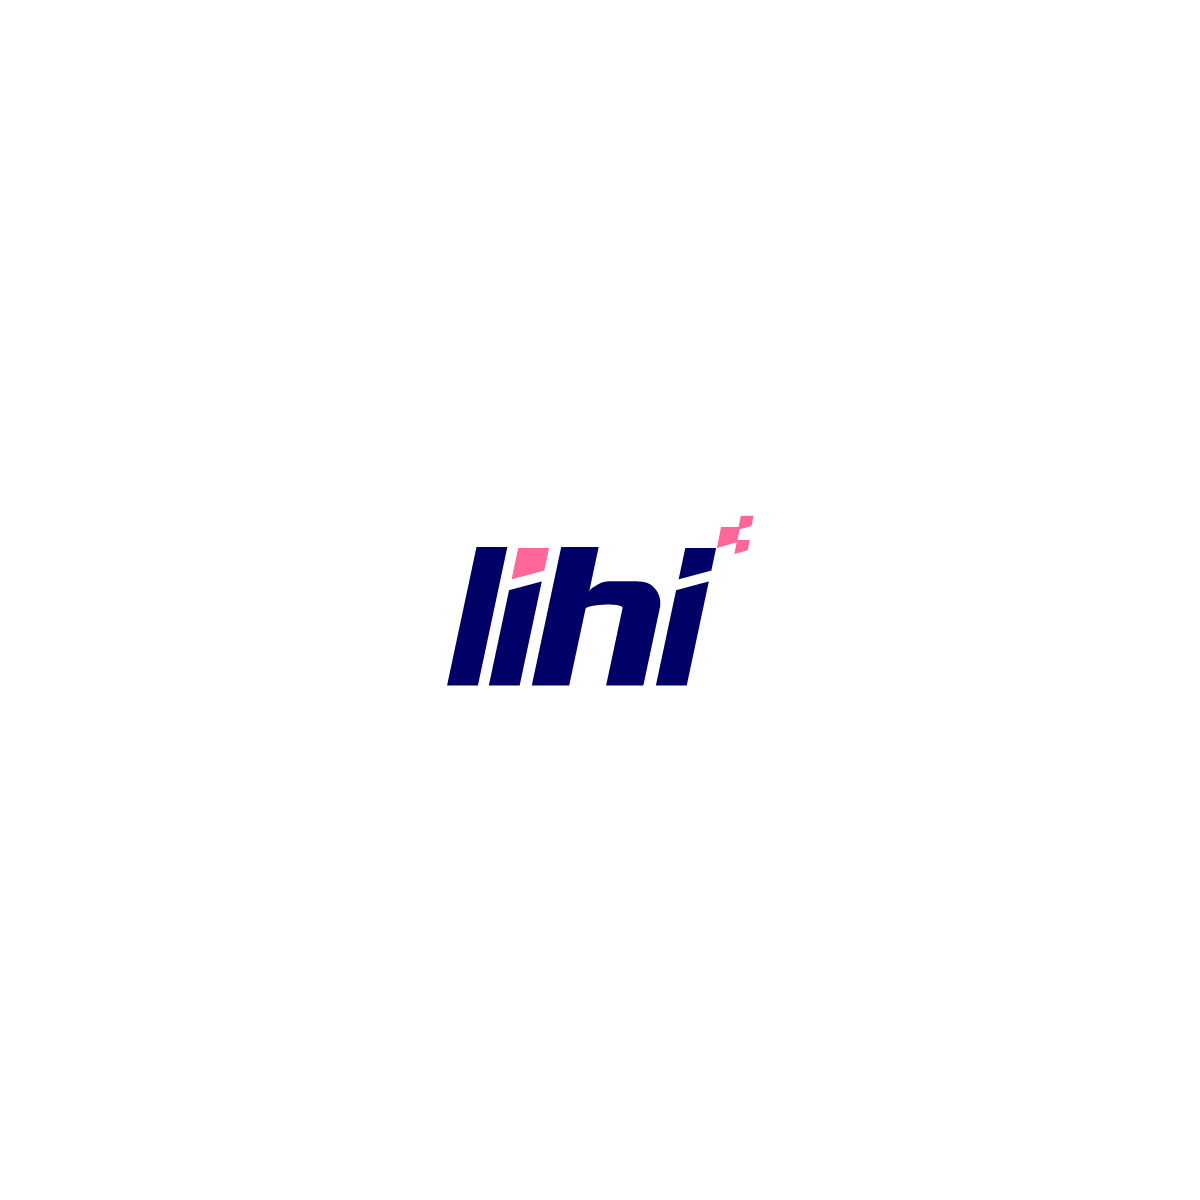 LIHI Short Links for Shopify